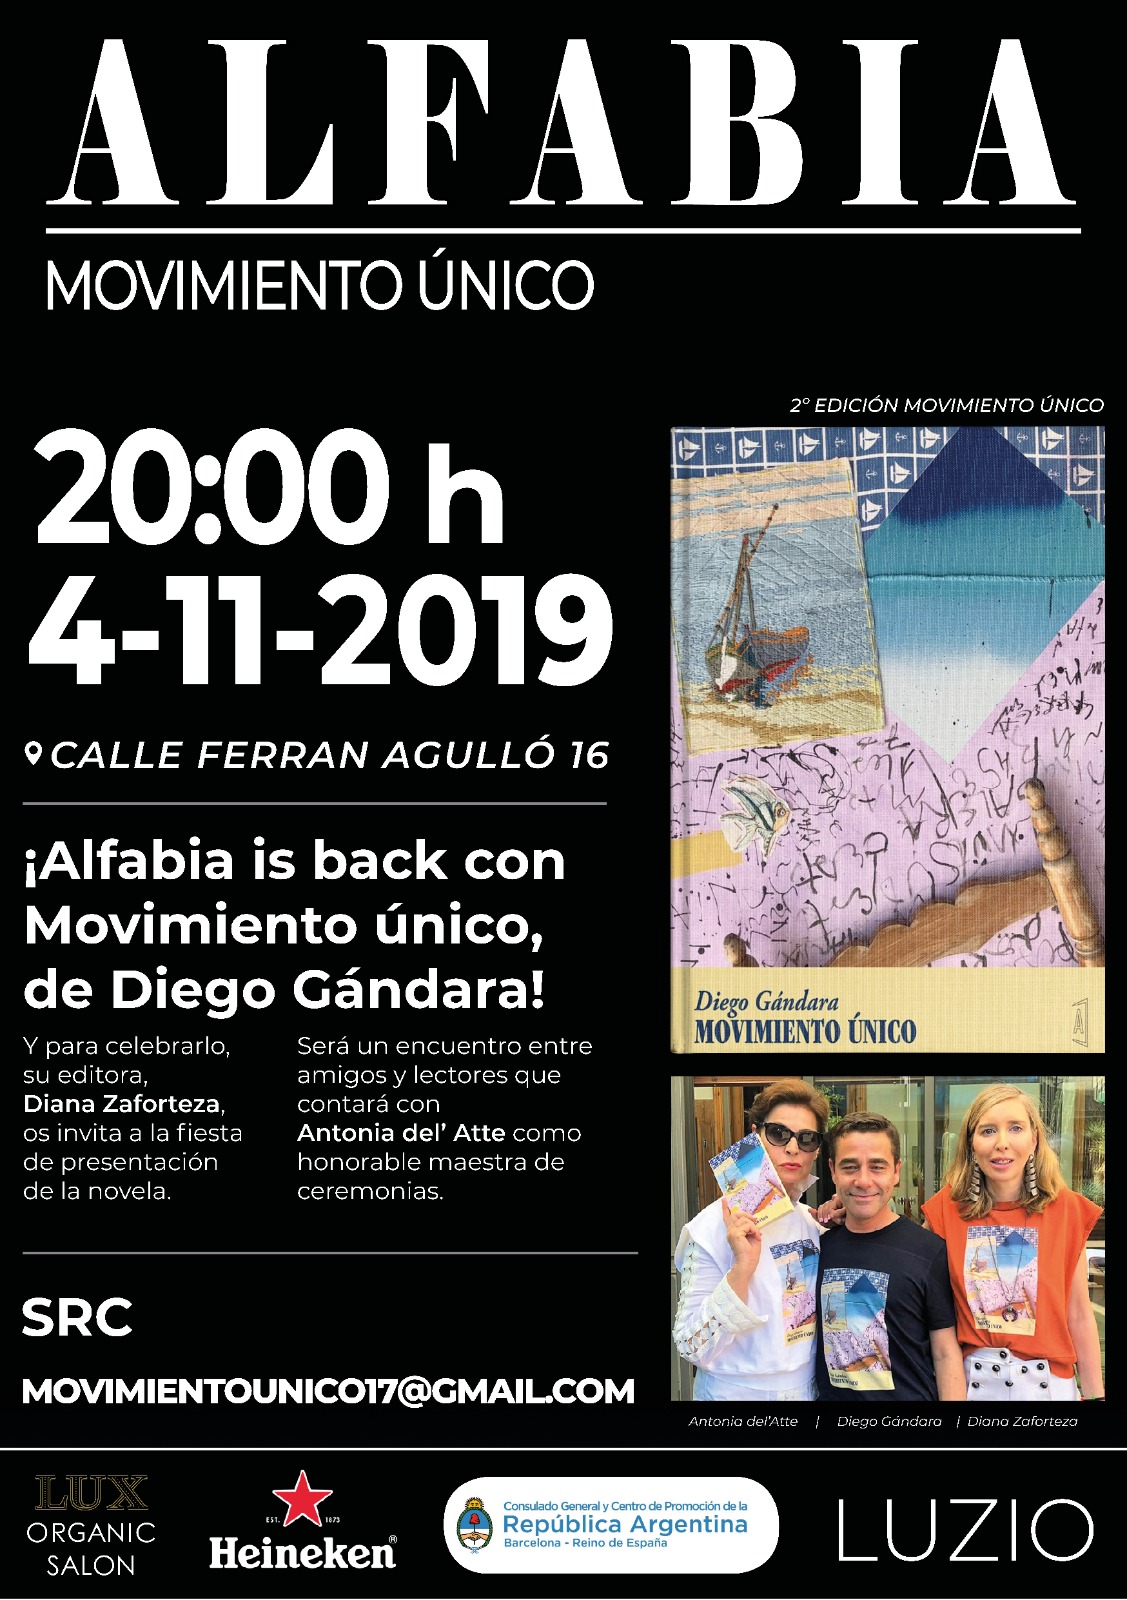 Fiesta de presentación de la novela "Movimiento único" de Diego Gándara